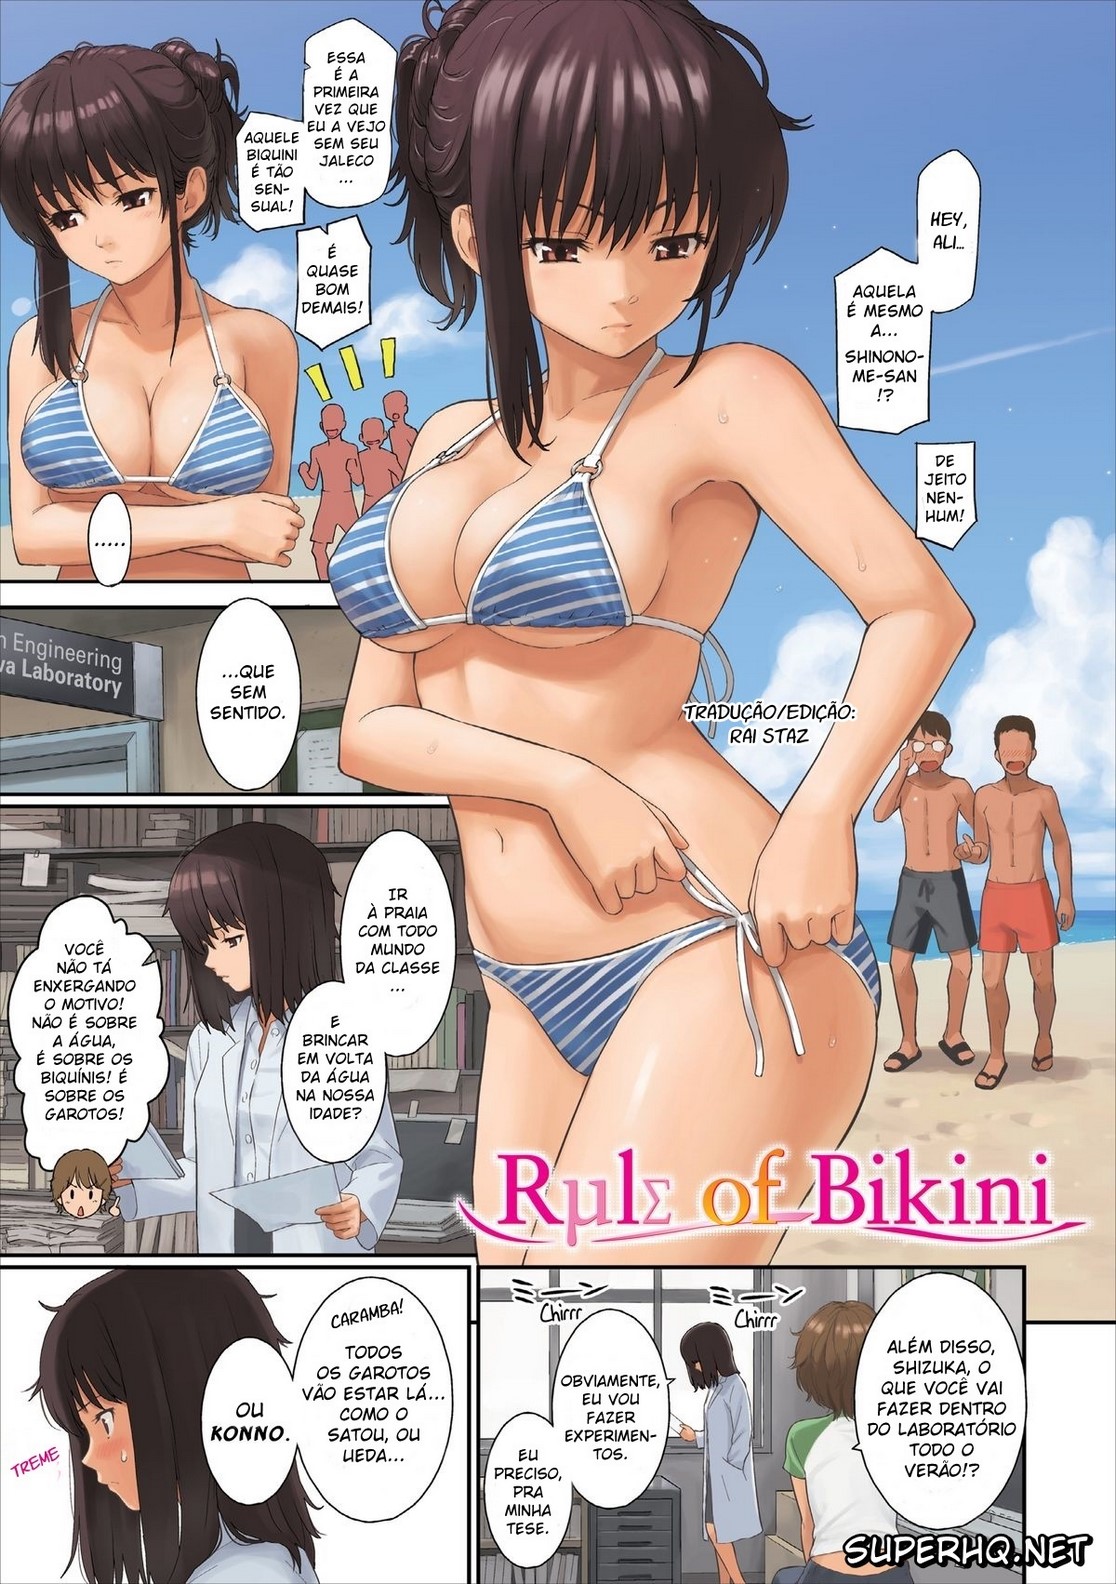 Rule of Bikini